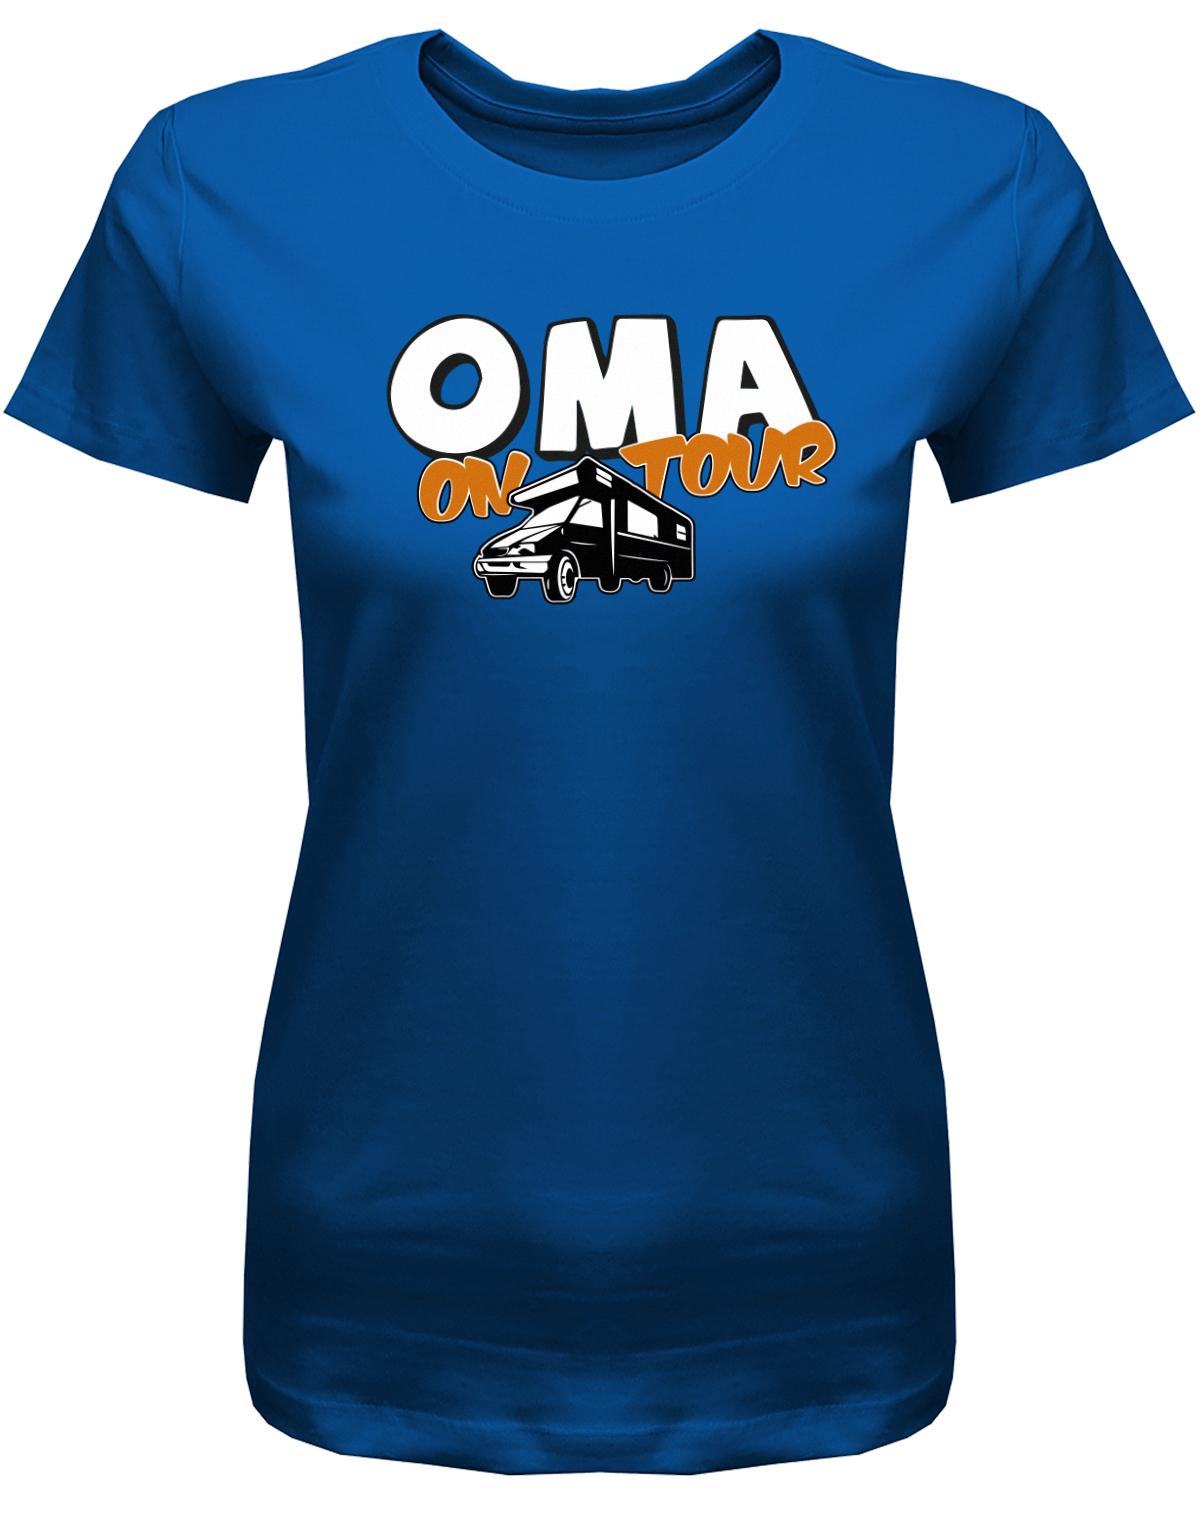 Oma-on-Tour-Camping-Damen-Shirt-royalblau